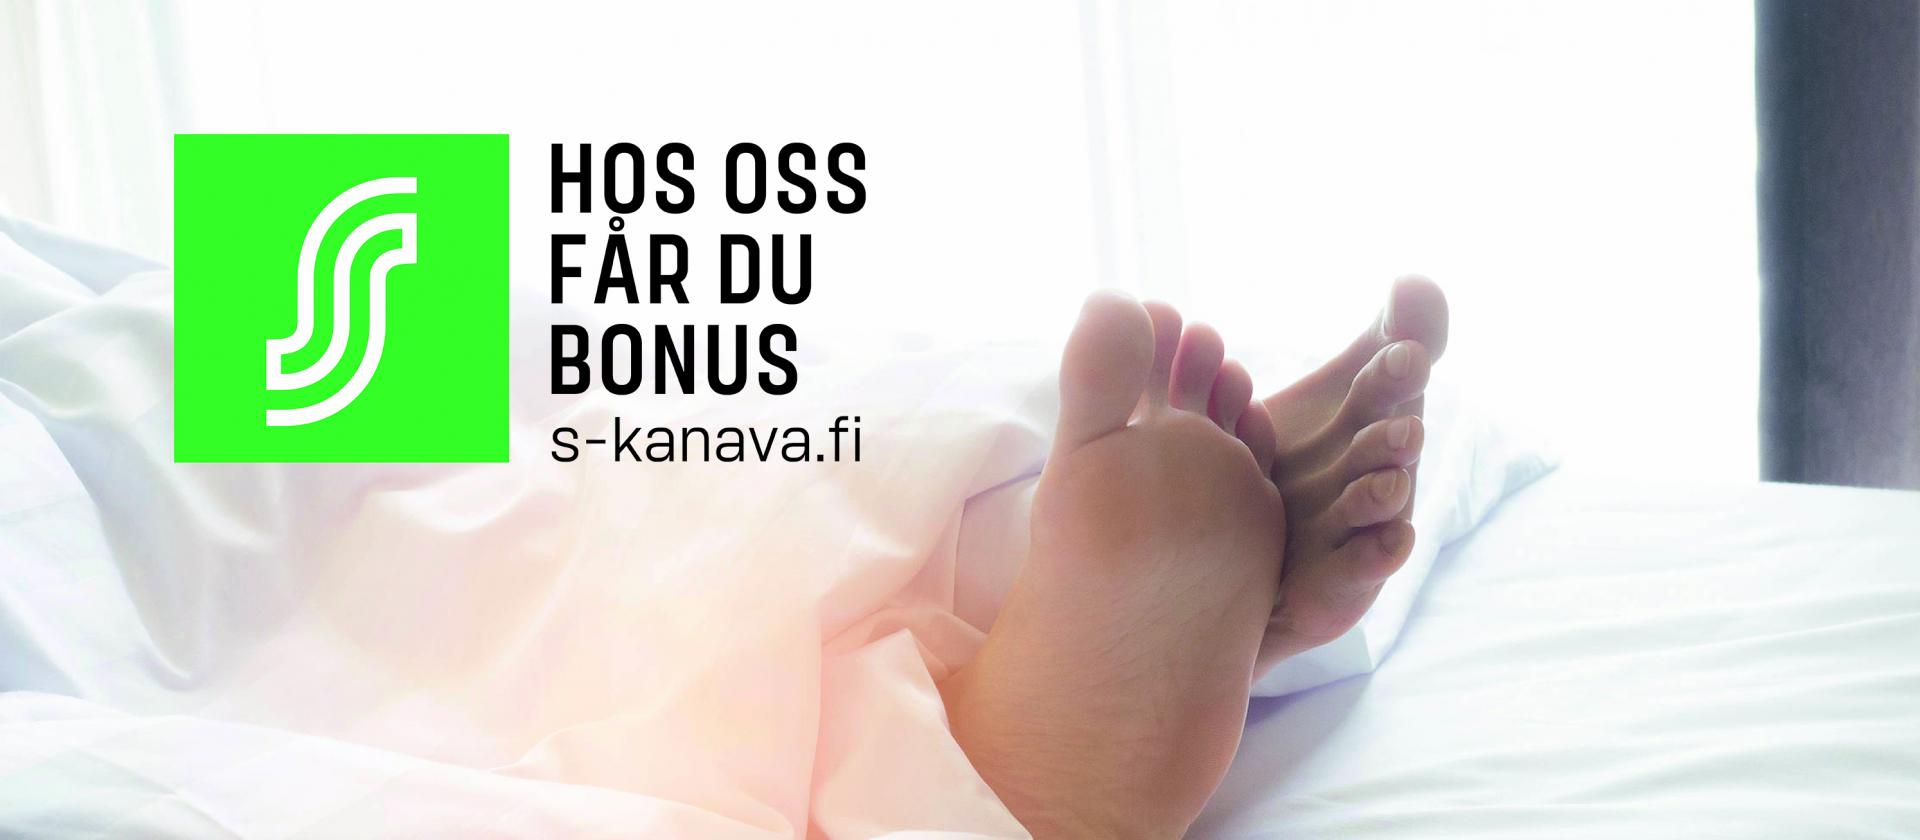 Reklam för bonus för S-gruppens ägarkunder på samtliga Ålandhotels anläggningar i Mariehamn.